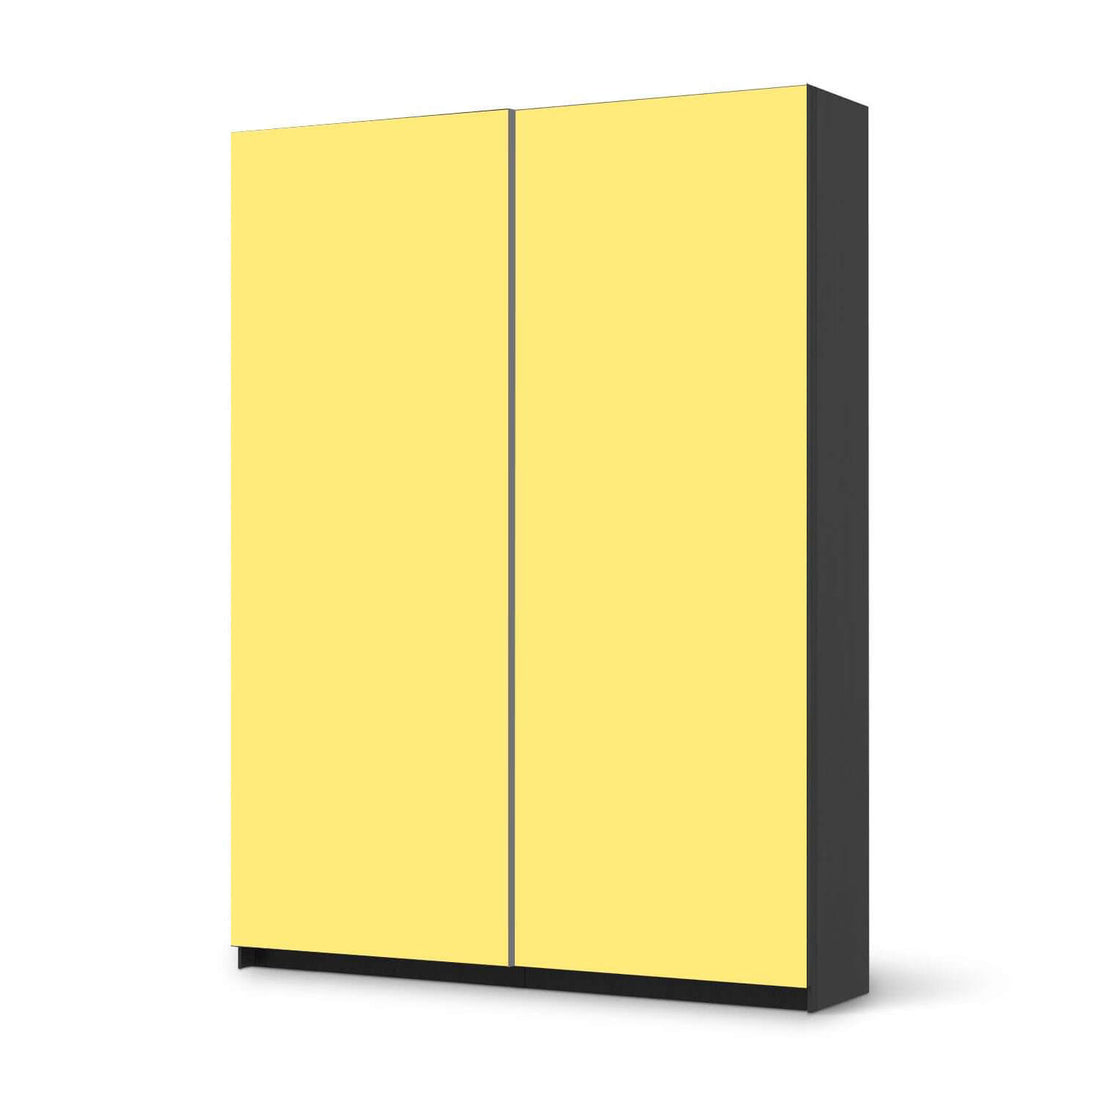 Möbel Klebefolie Gelb Light - IKEA Pax Schrank 201 cm Höhe - Schiebetür 75 cm - schwarz